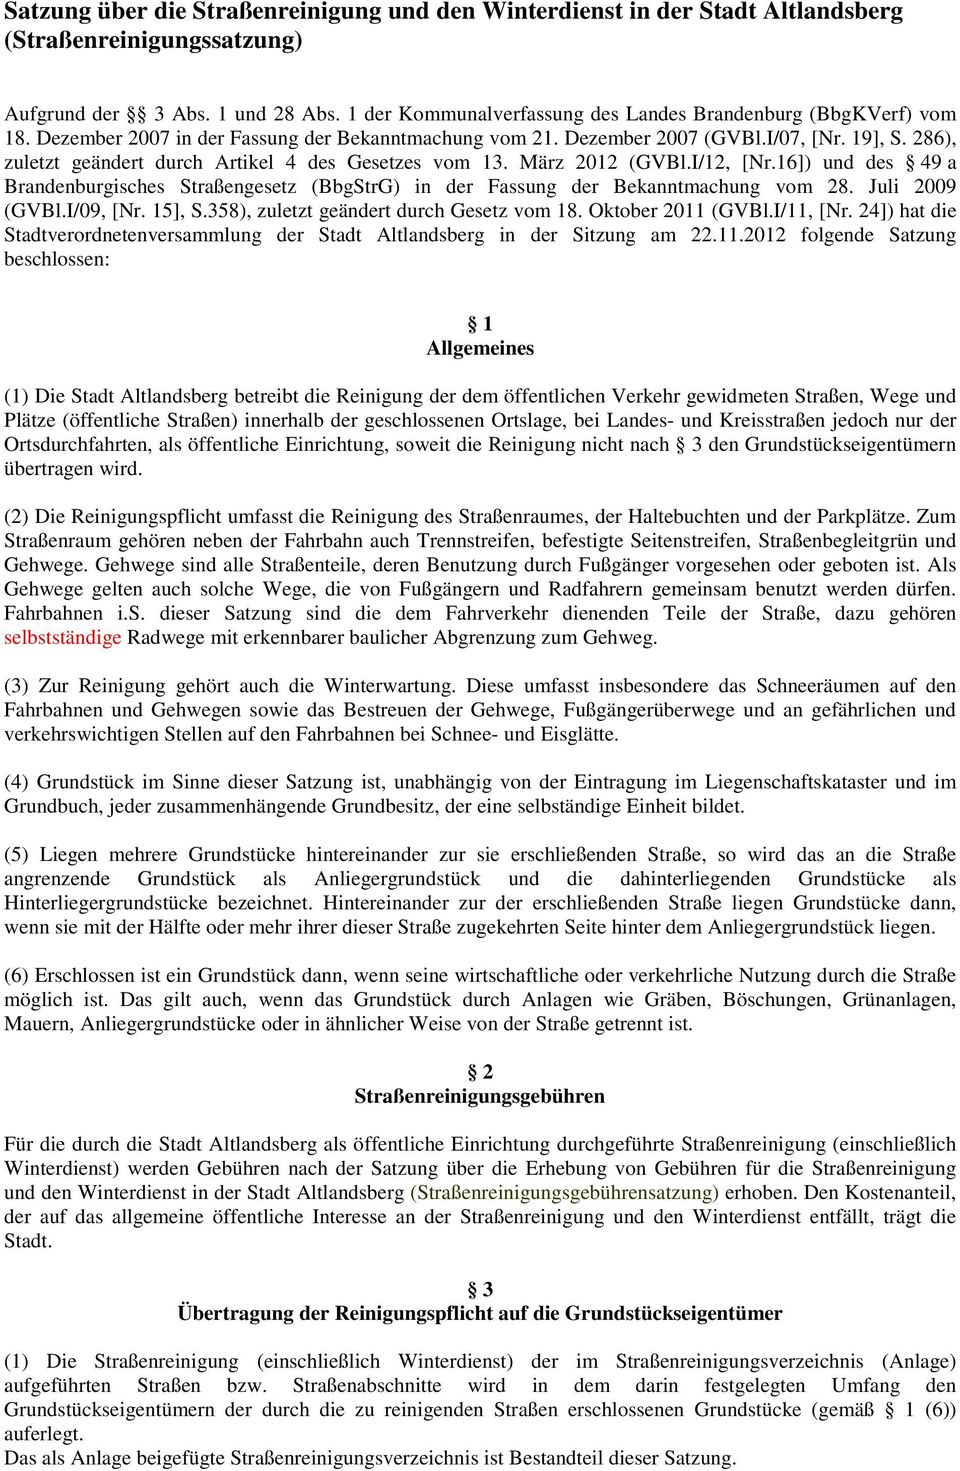 286), zuletzt geändert durch Artikel 4 des Gesetzes vom 13. März 2012 (GVBl.I/12, [Nr.16]) und des 49 a Brandenburgisches Straßengesetz (BbgStrG) in der Fassung der Bekanntmachung vom 28.